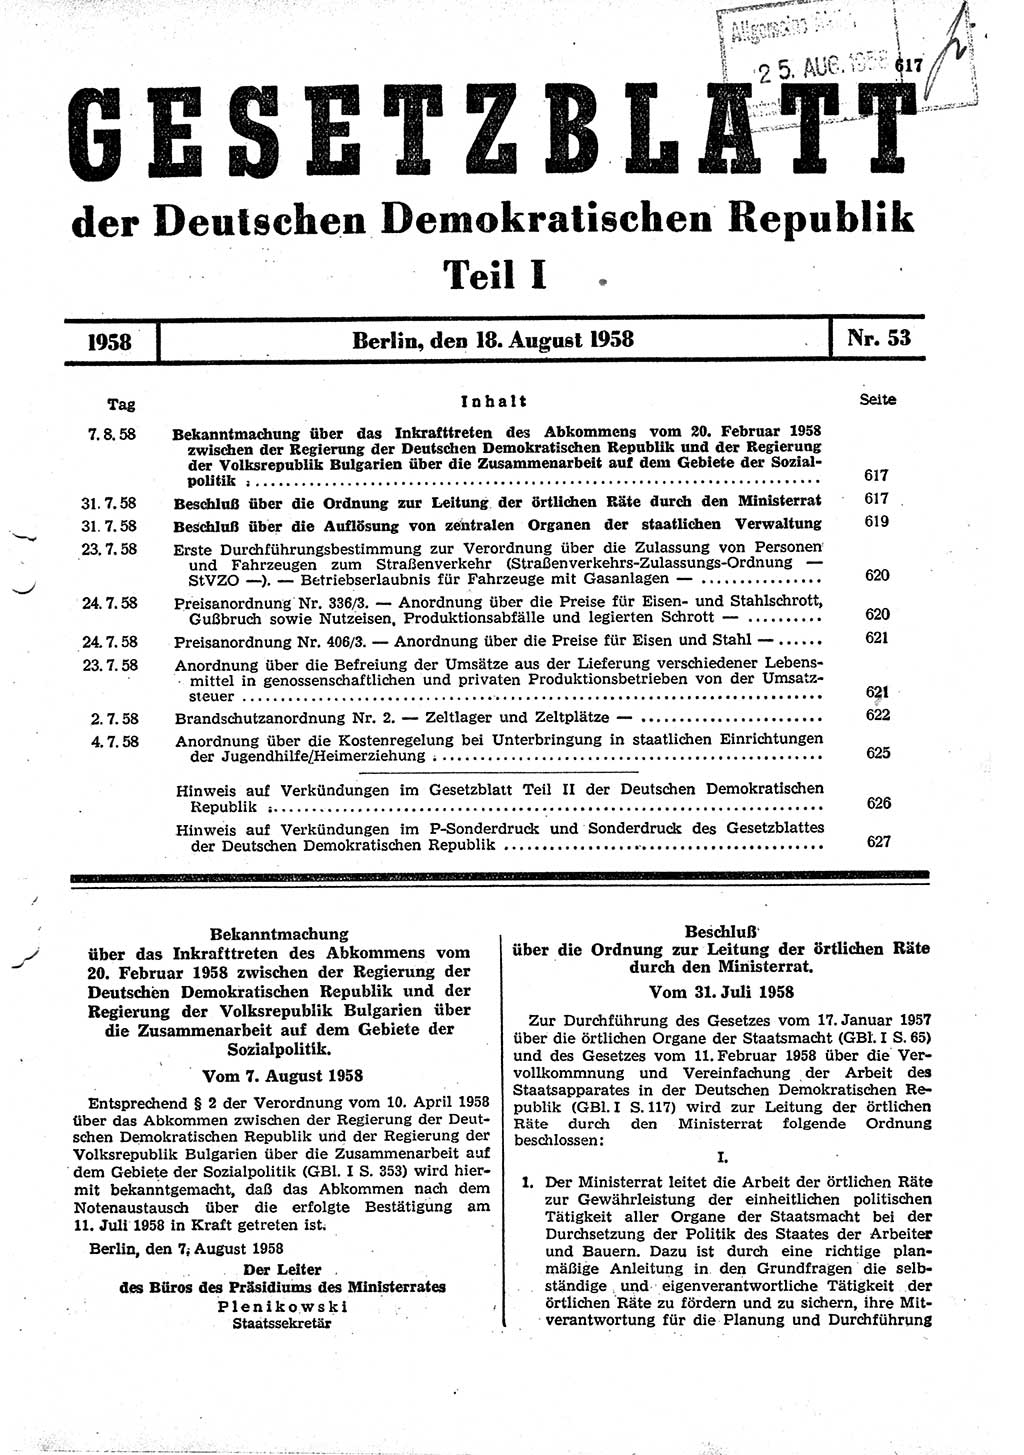 Gesetzblatt (GBl.) der Deutschen Demokratischen Republik (DDR) Teil Ⅰ 1958, Seite 617 (GBl. DDR Ⅰ 1958, S. 617)